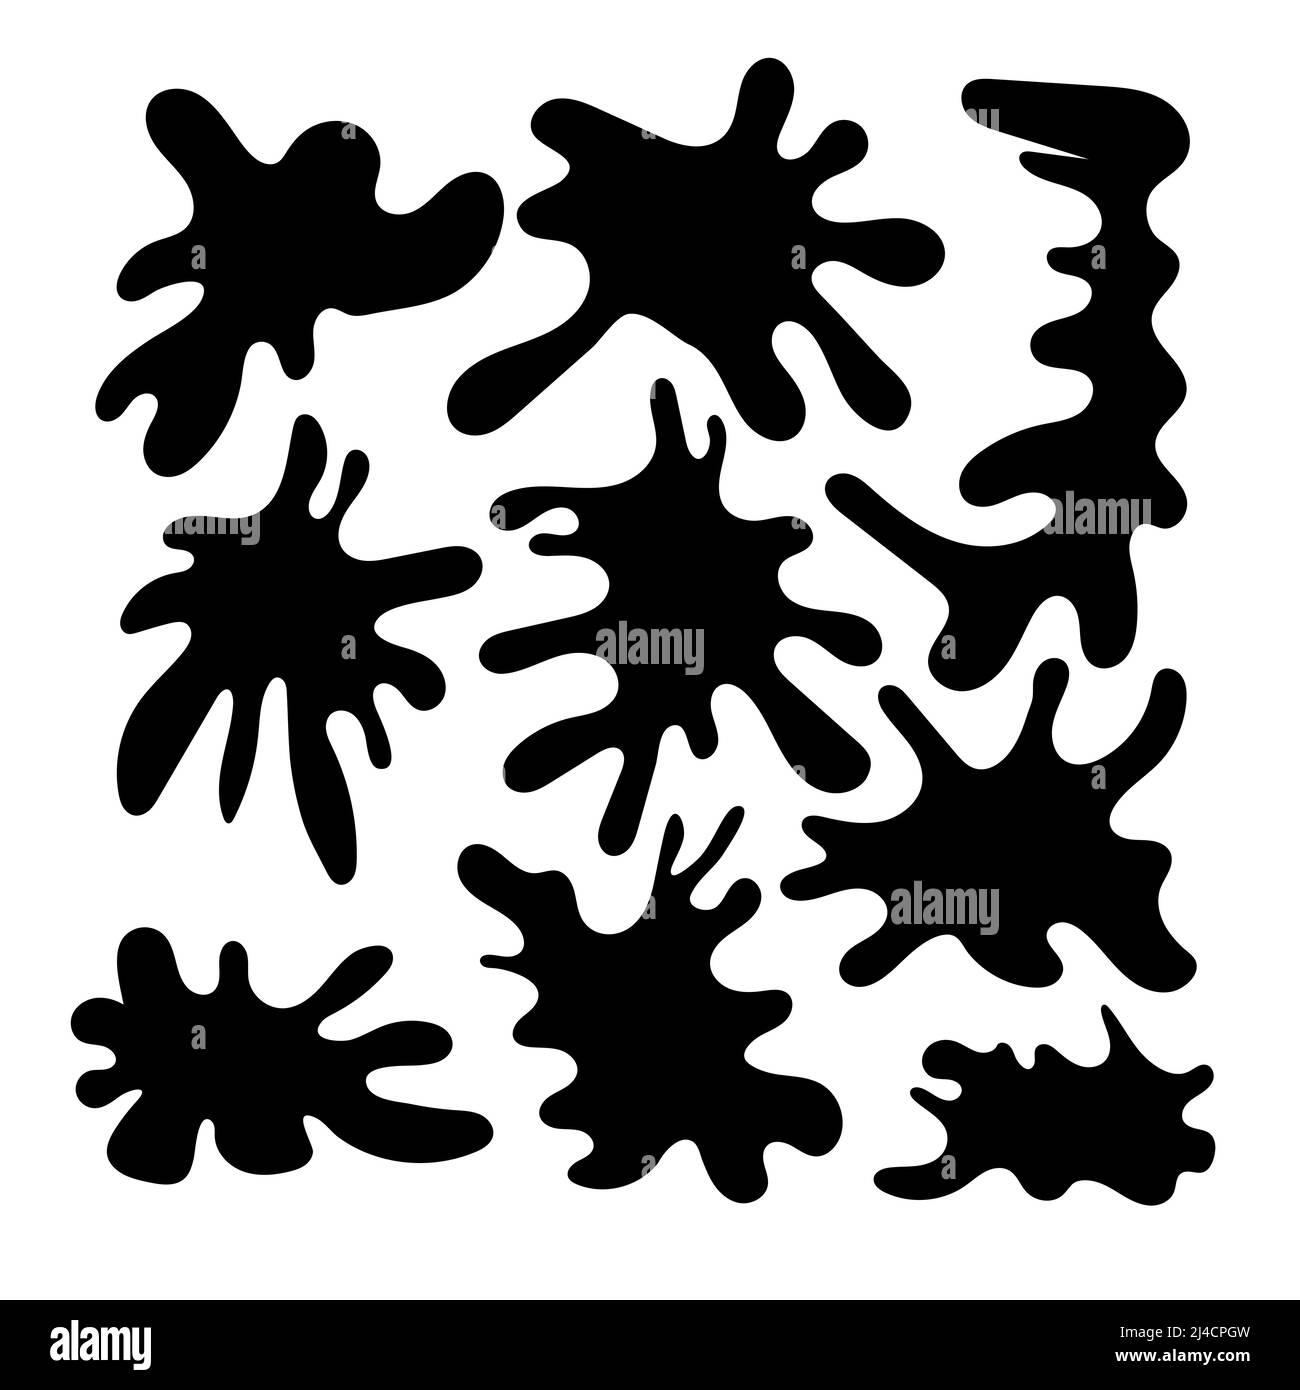 Schwarze Blob-Formen. Spot-Kollektion für Dekorationen und Rahmen, chaotische Spritzer von Ooze und Farbe. Isolierte Vektorgrafiken Stock Vektor